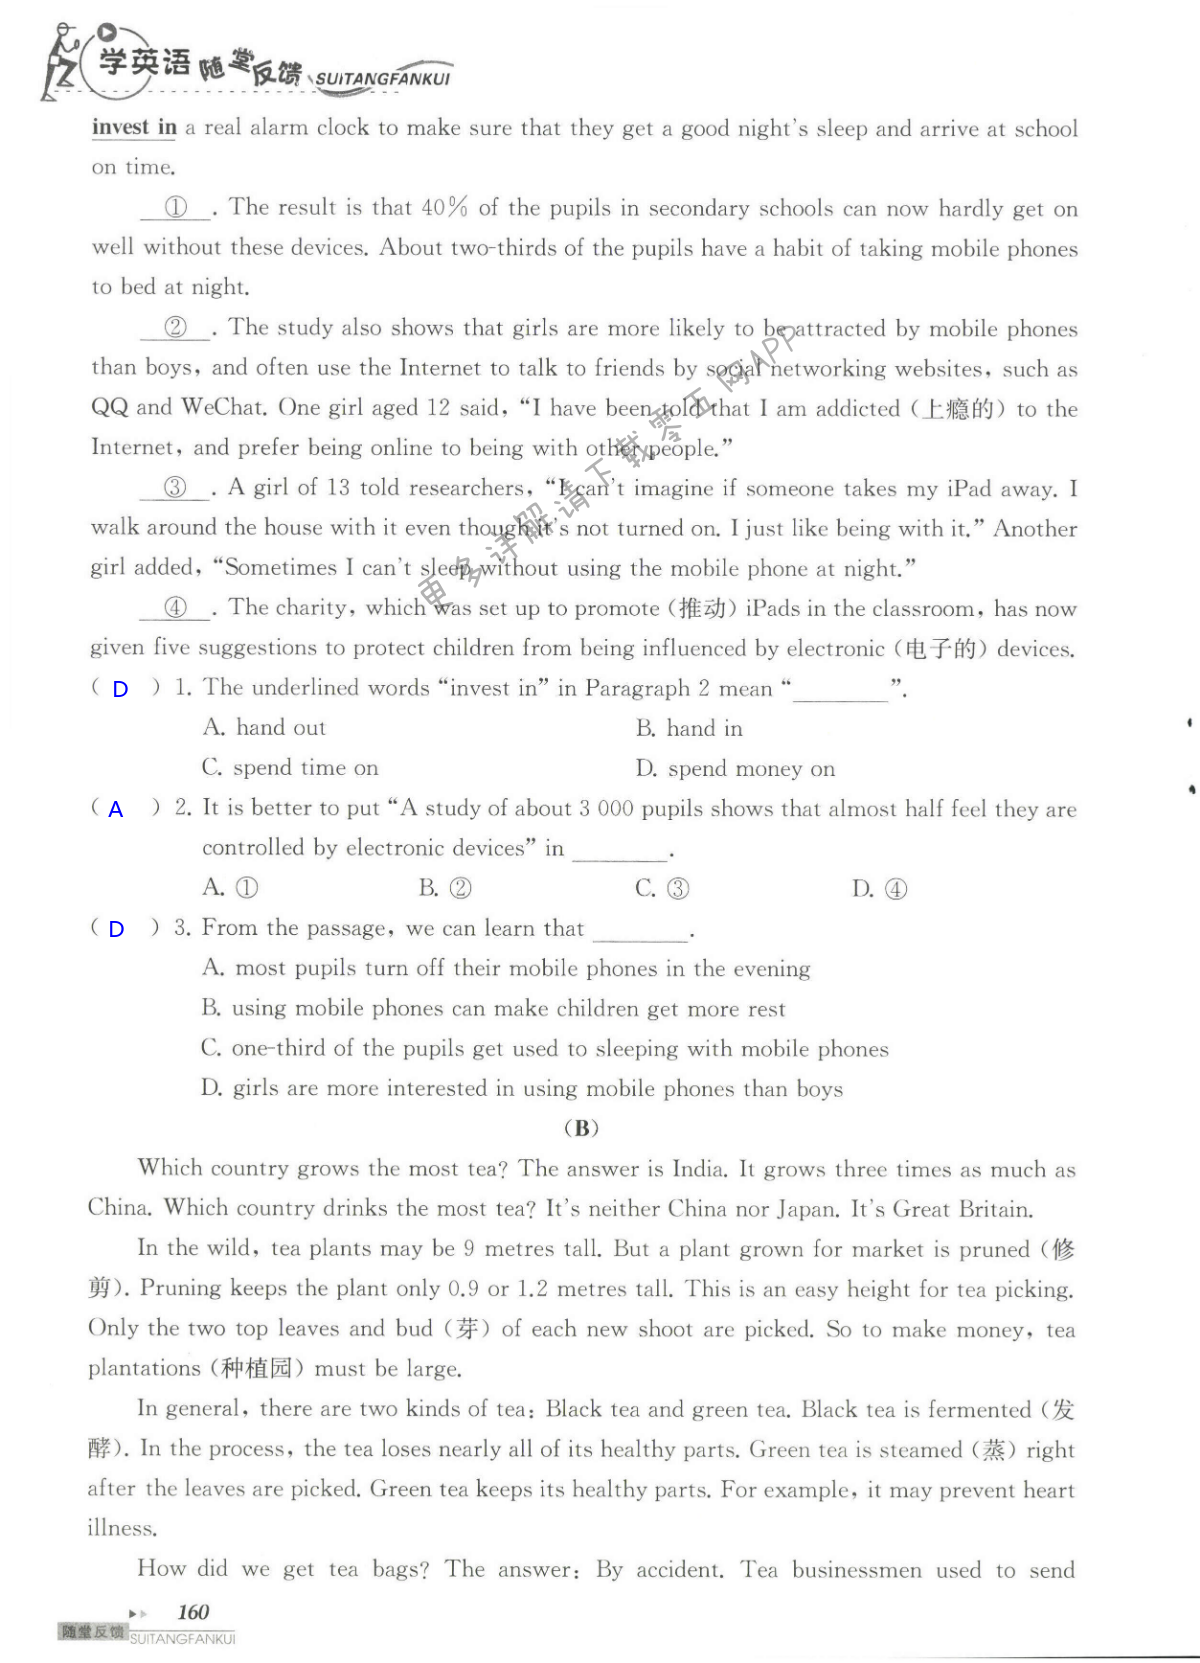 单元综合测试卷 Test for Unit 1 of 9B - 第160页